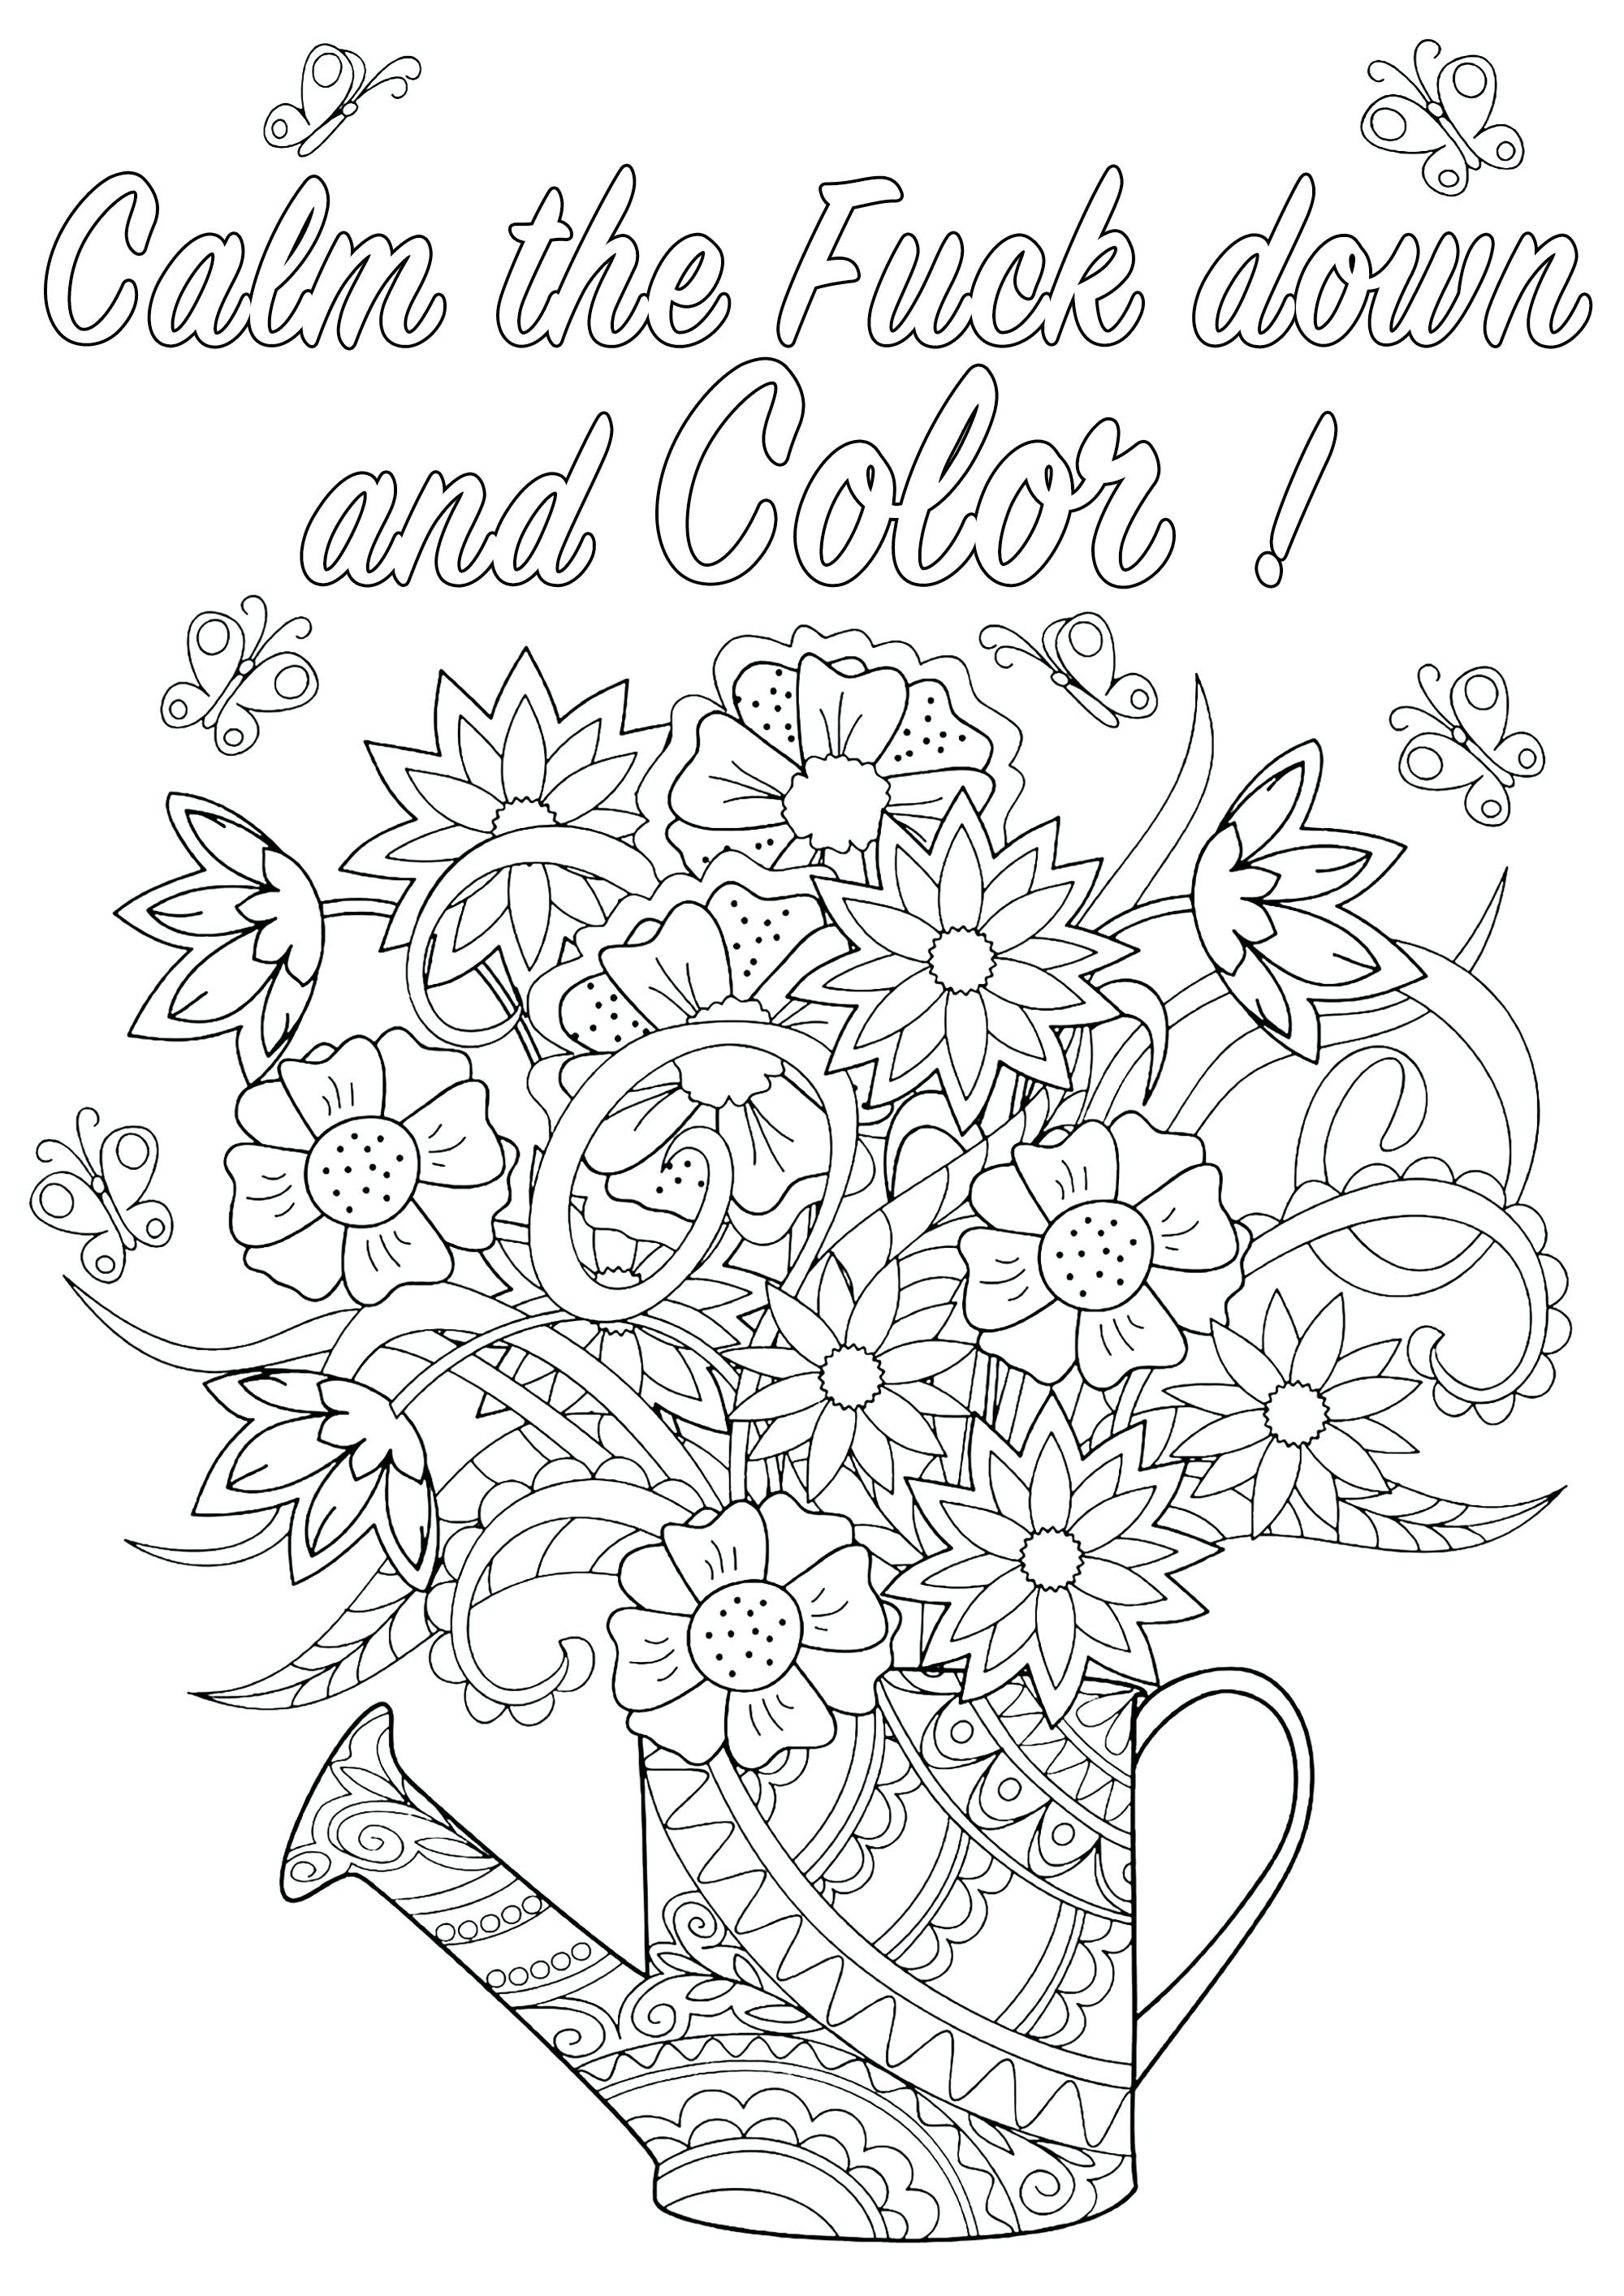 Cálmate y colorea : Página para colorear de palabras malsonantes con flores en una regadera.